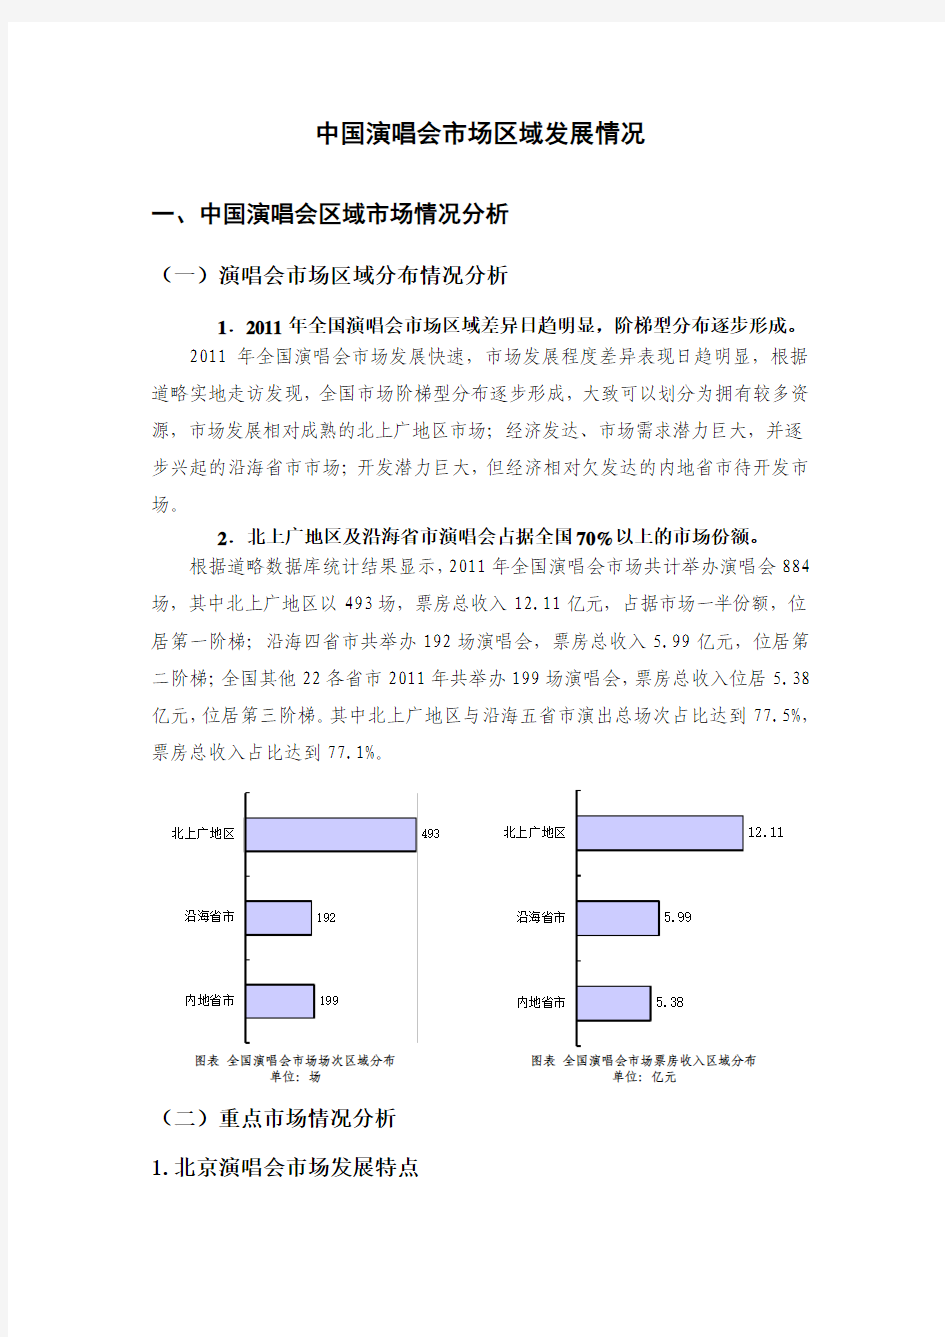 中国演唱会市场区域发展情况-部分